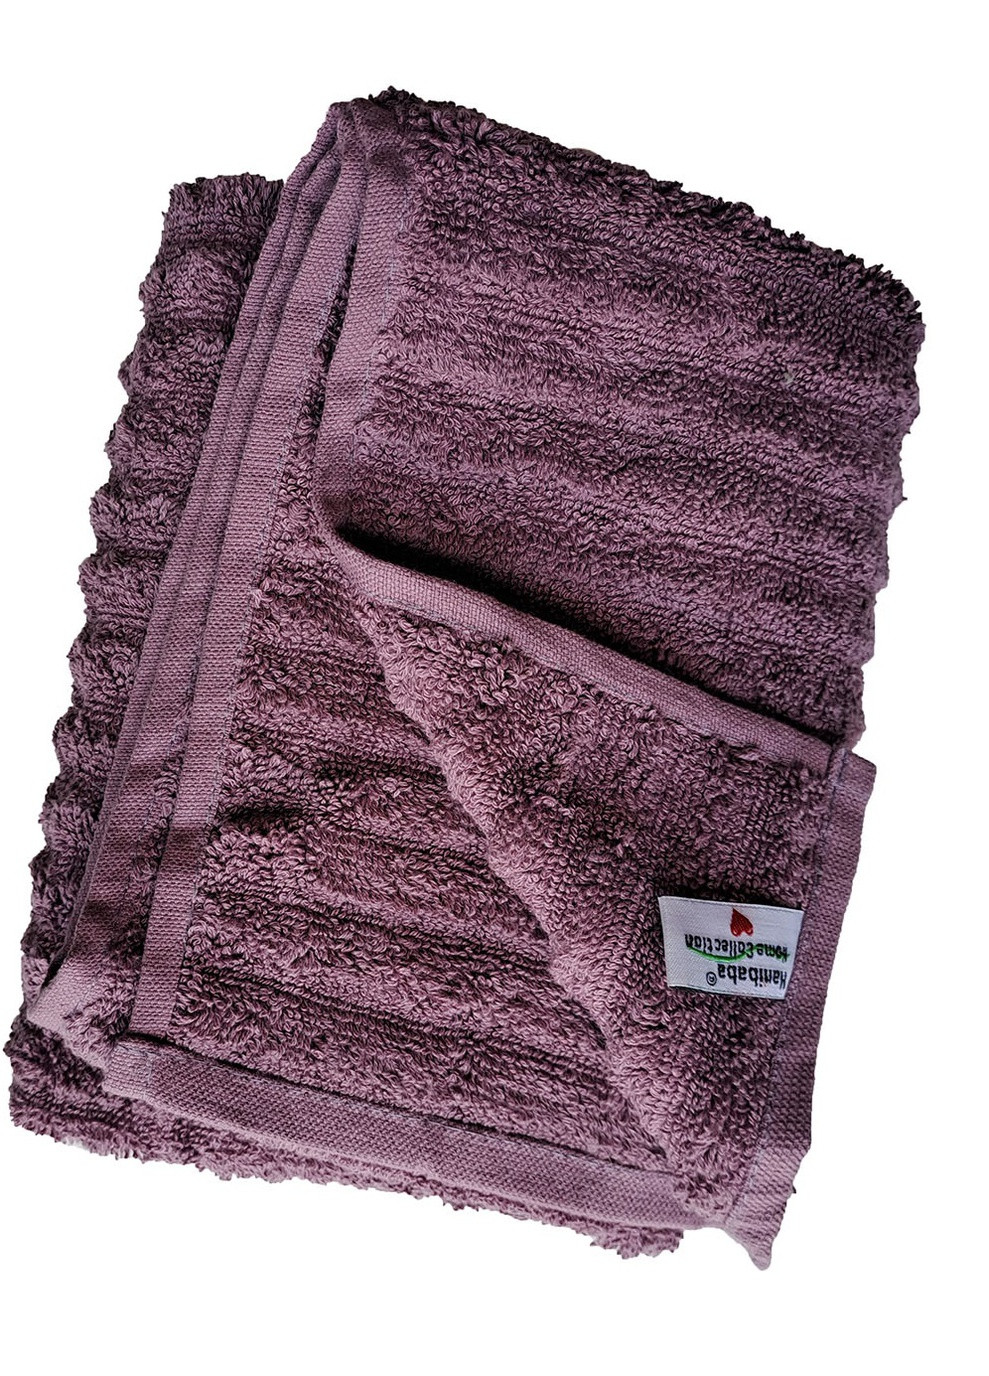 Hanibaba полотенце для лица 50х90см однотонный фиолетовый производство - Турция